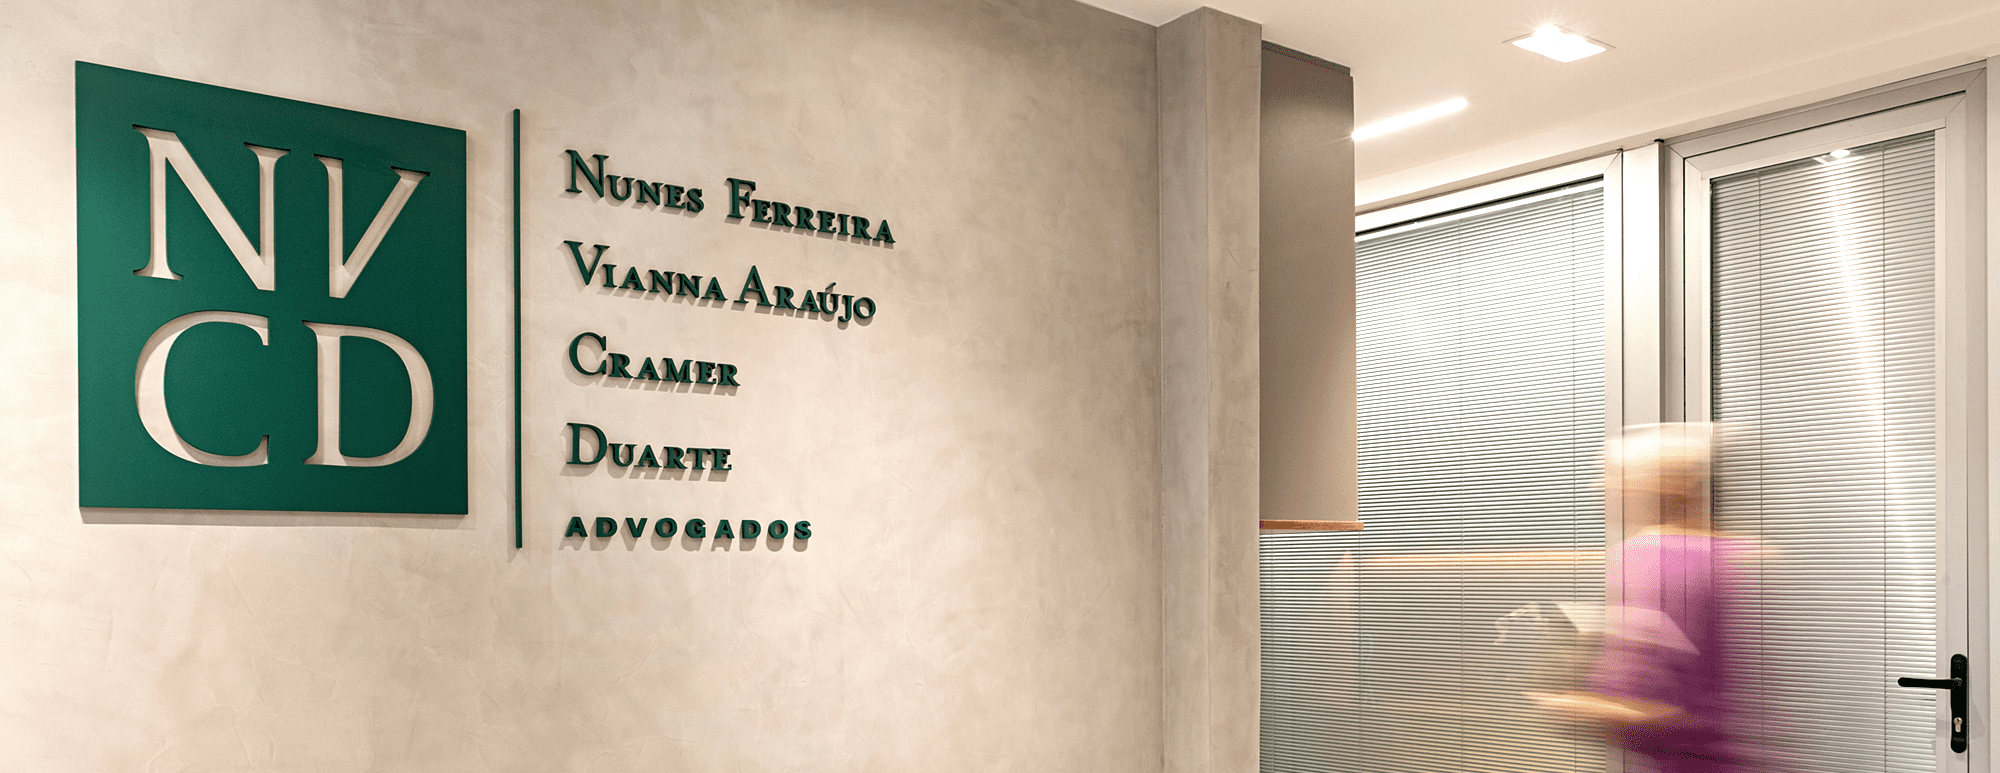 Banner Principal - Nunes Ferreira - Vianna Araújo - Cramer - Duarte - Advogados